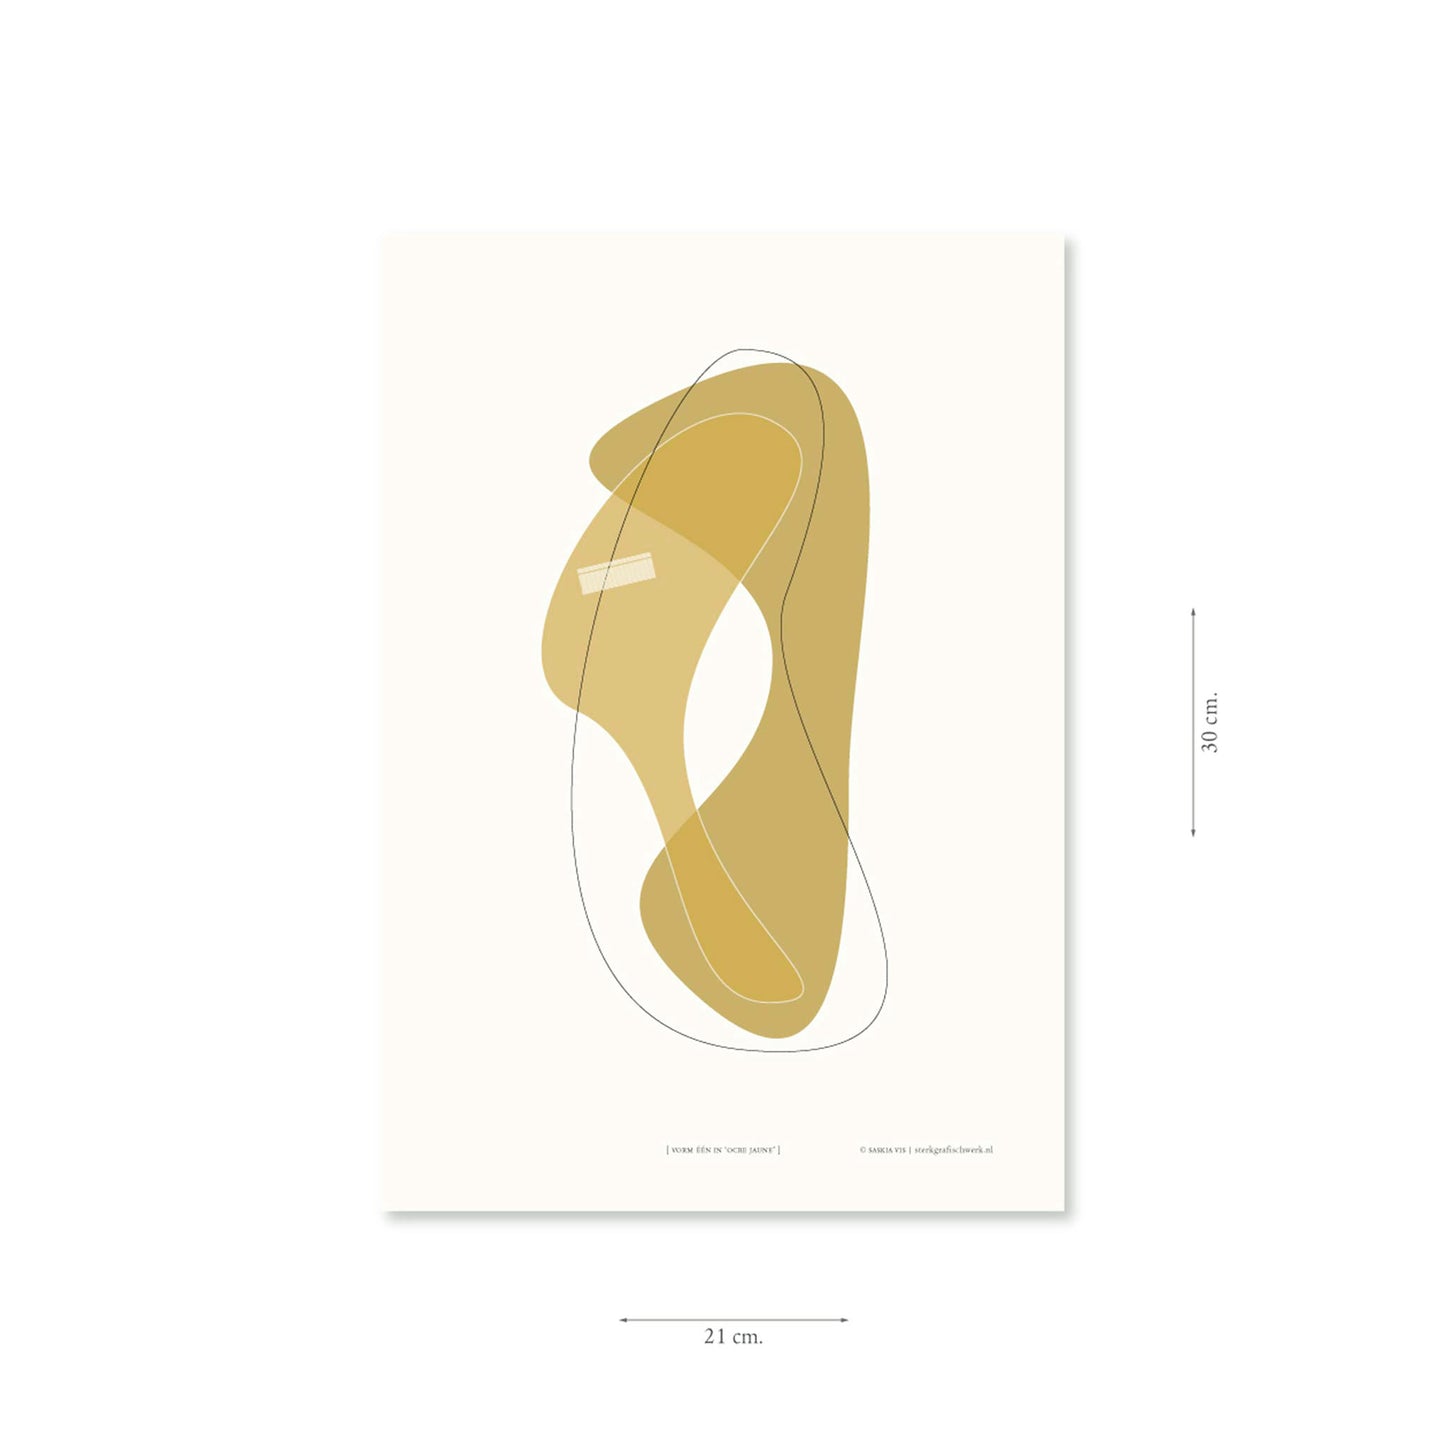 Productafbeelding poster "vorm één in ocre jaune" met aanduiding van het formaat erop weergegeven 21 x 30 cm